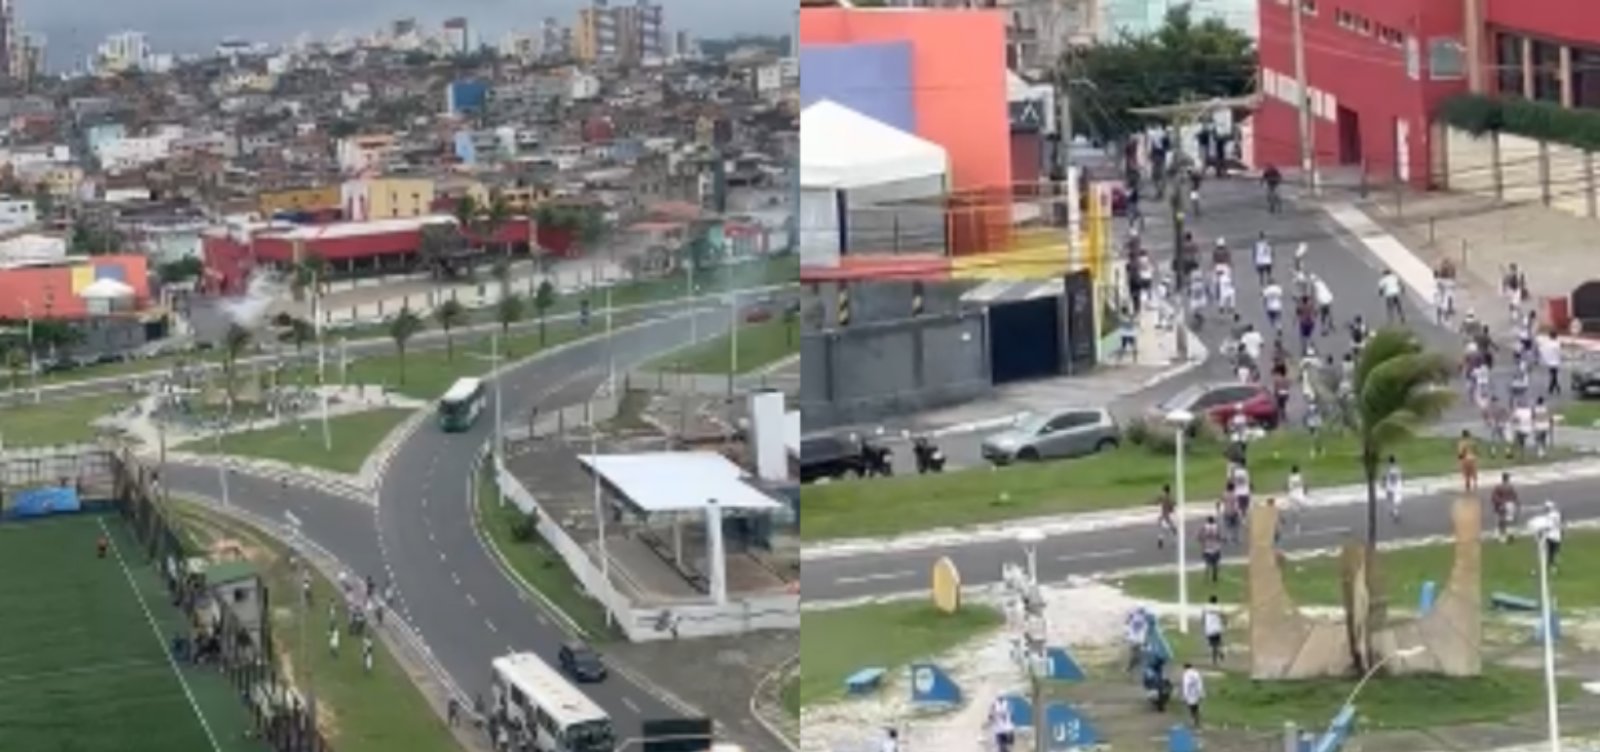 Bomba atinge ônibus na Boca do Rio durante confusão entre torcidas do Bahia e Vitória